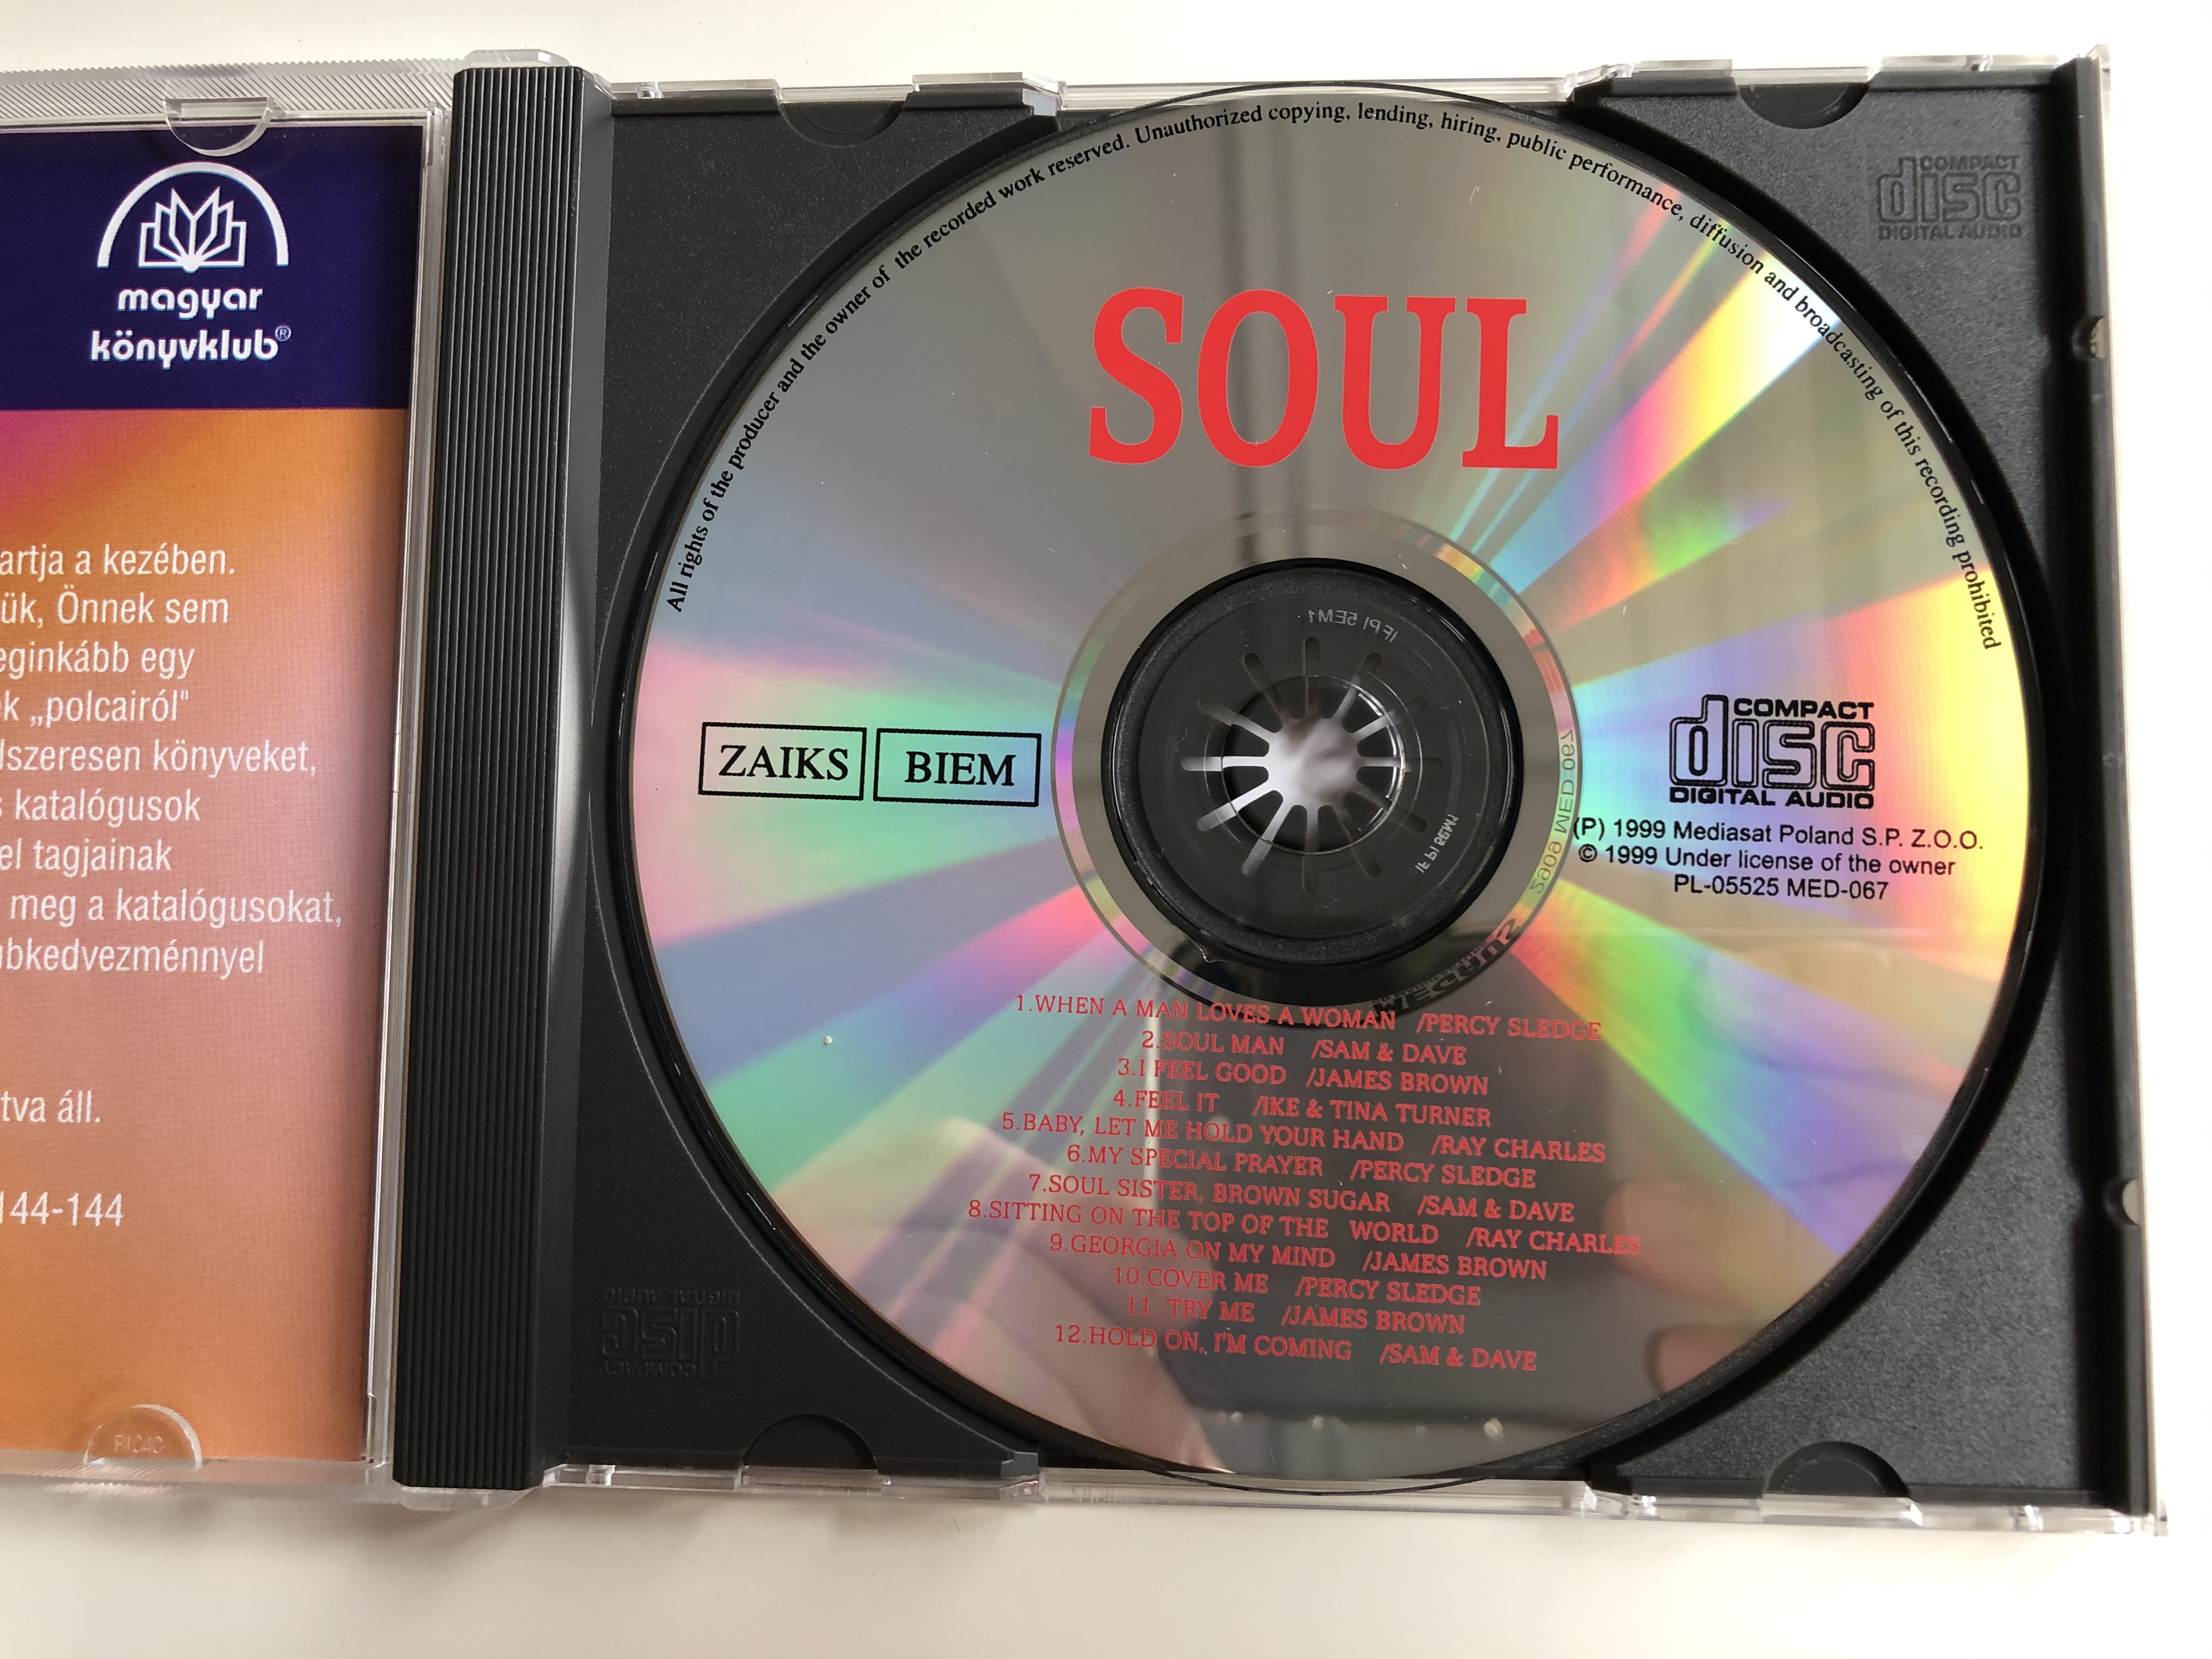 soul-magyar-k-nyvklub-mediasat-poland-audio-cd-1999-med-067-3-.jpg